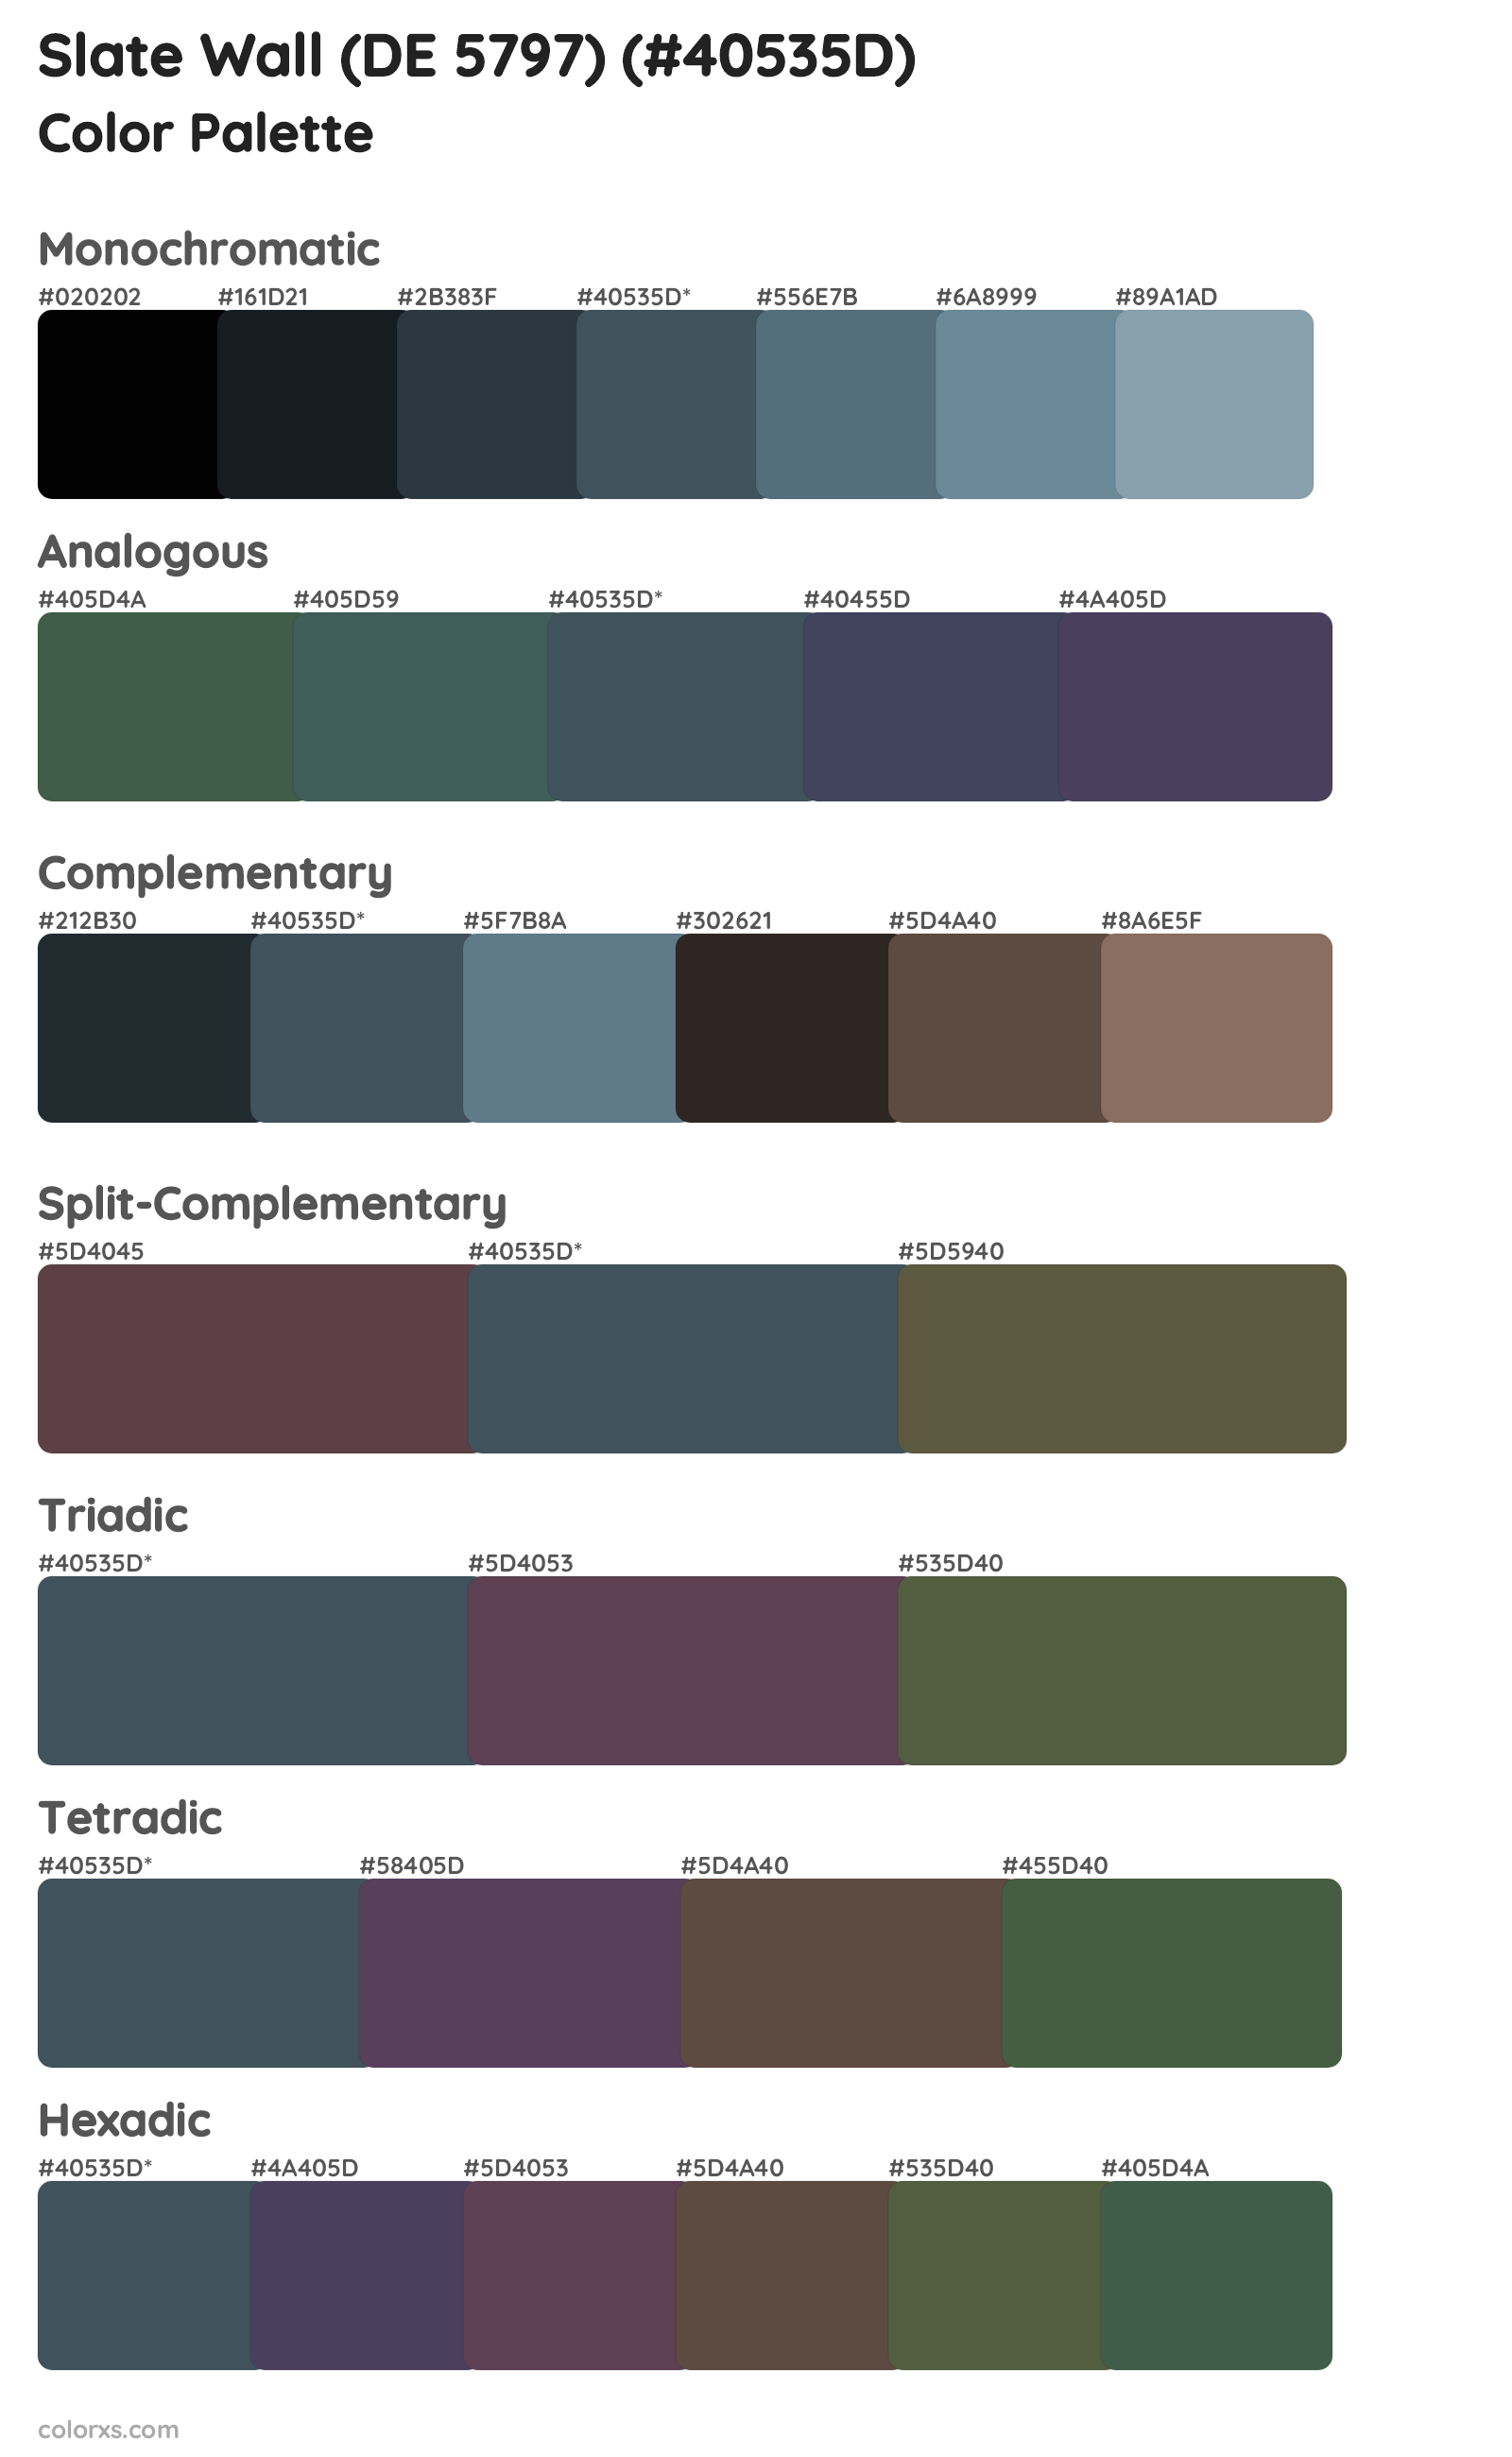 Slate Wall (DE 5797) Color Scheme Palettes